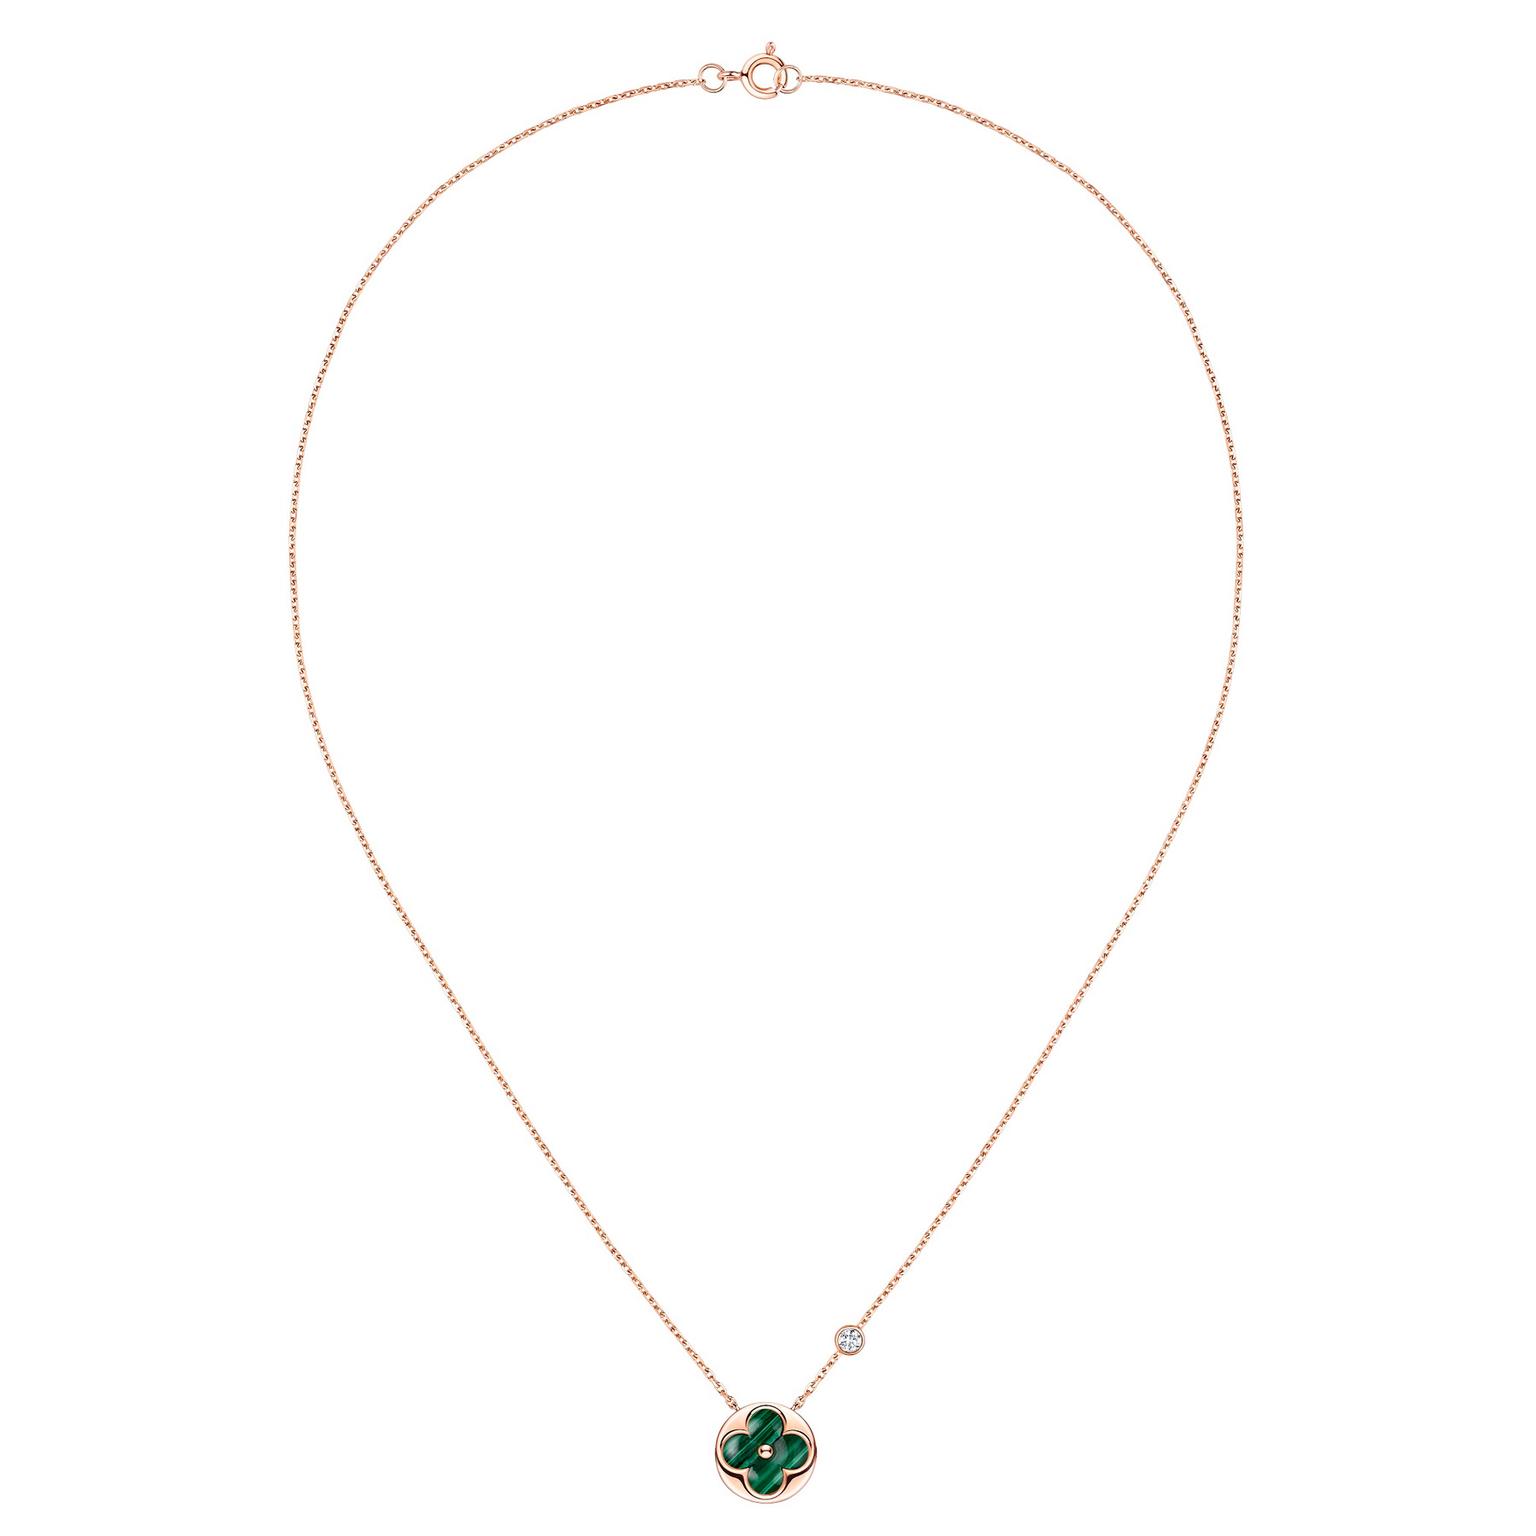 Louis Vuitton Color Blossom BB Sun necklace